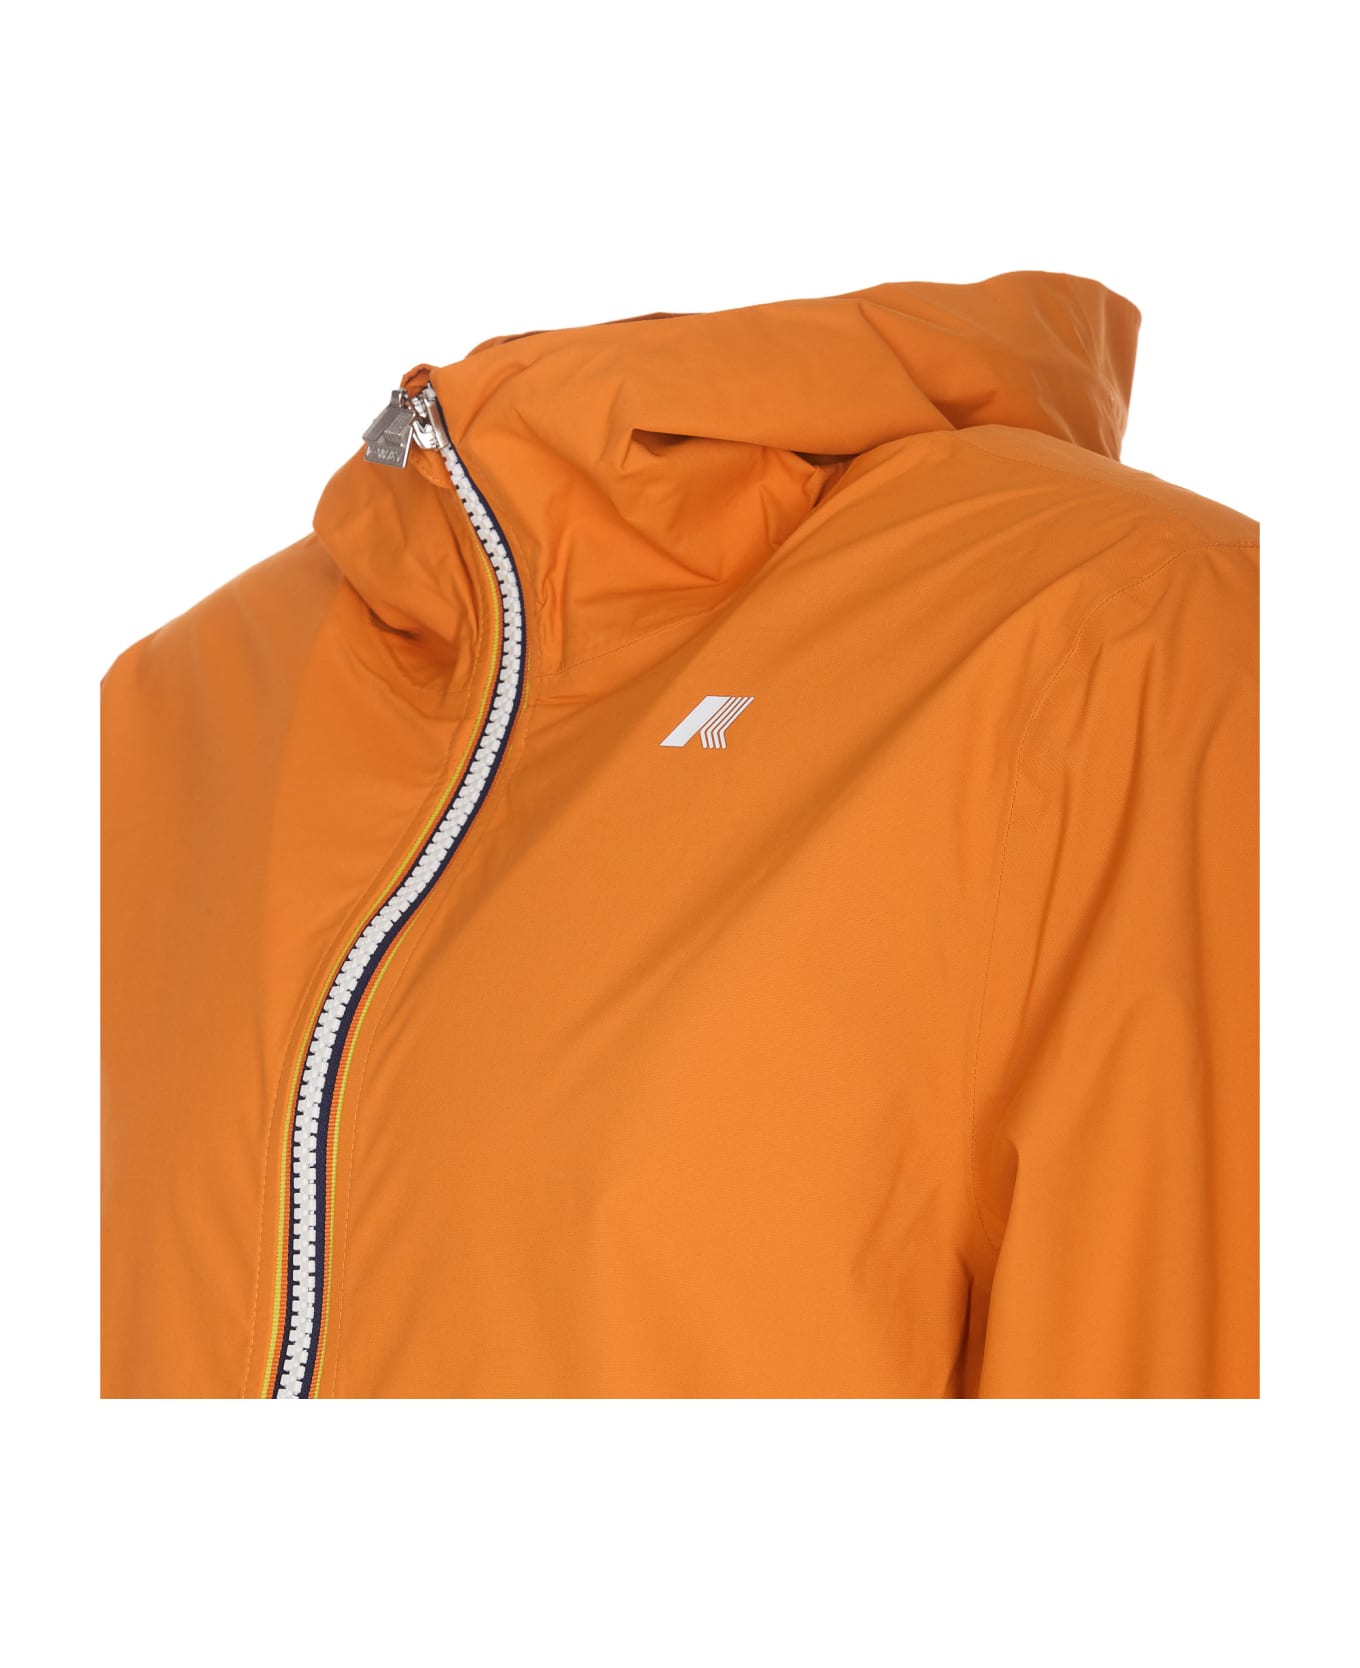 K-Way Stretch Jacket - Orange Md